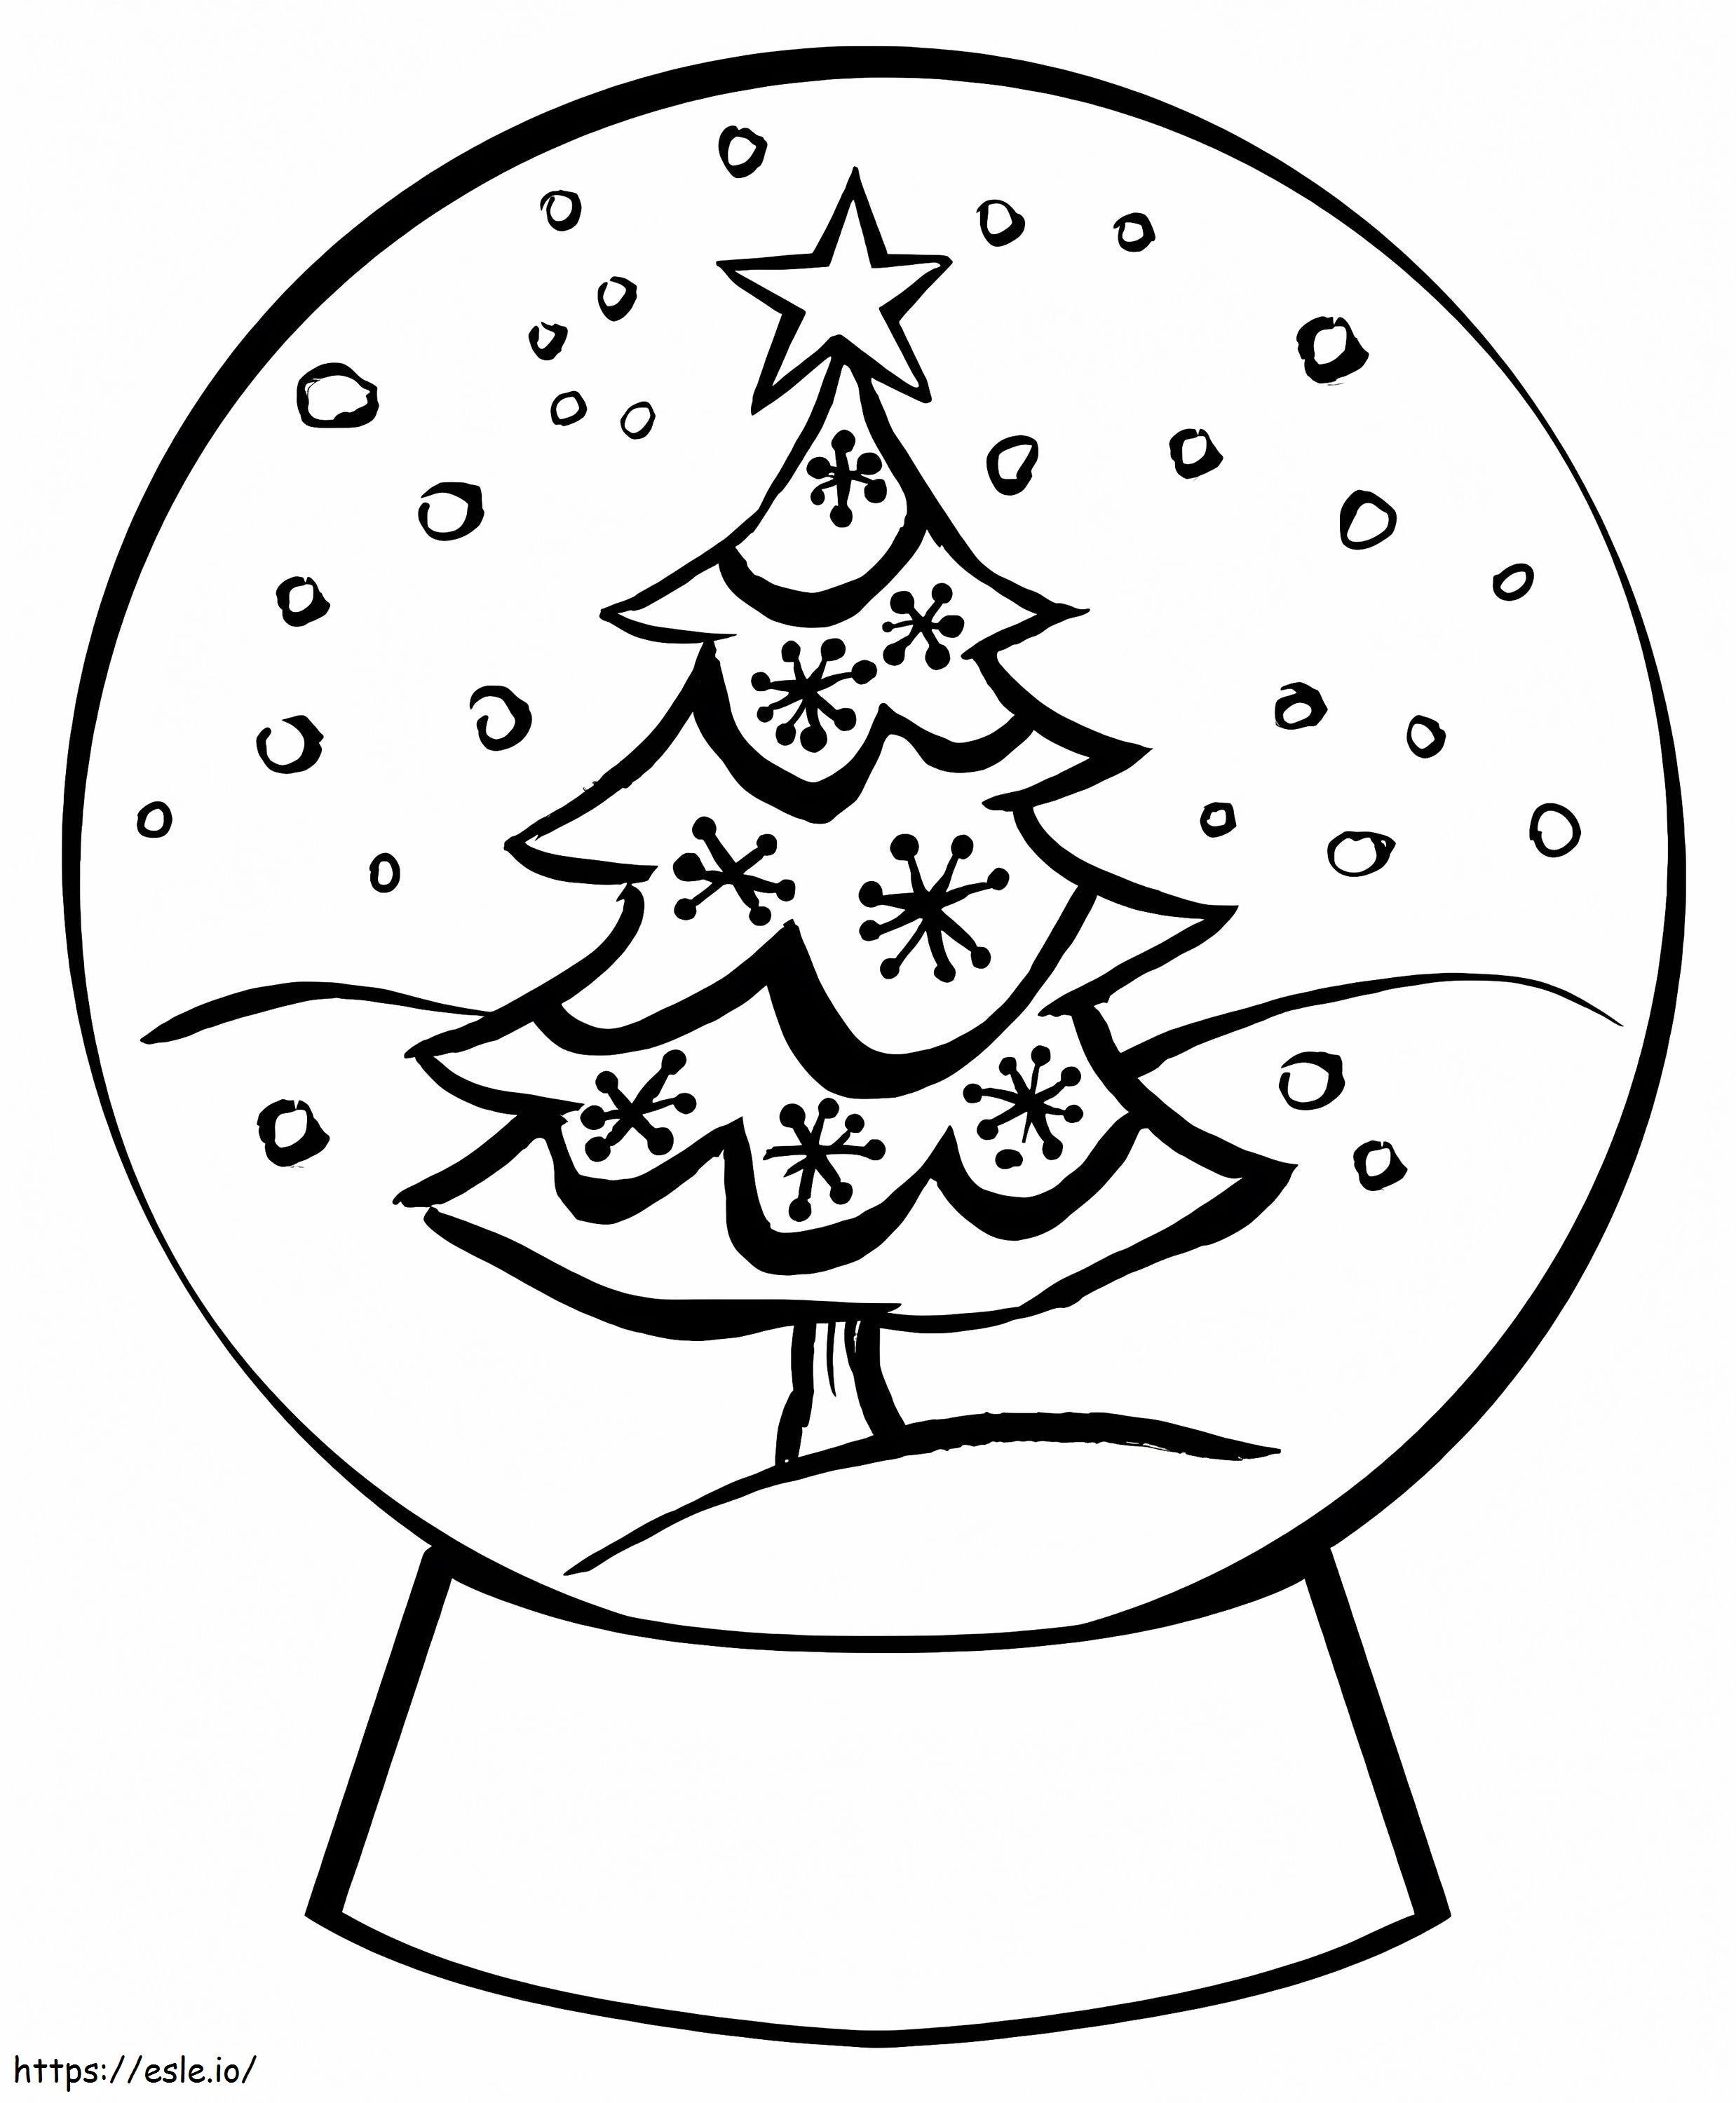 Globo de nieve gratis con árbol de Navidad para colorear